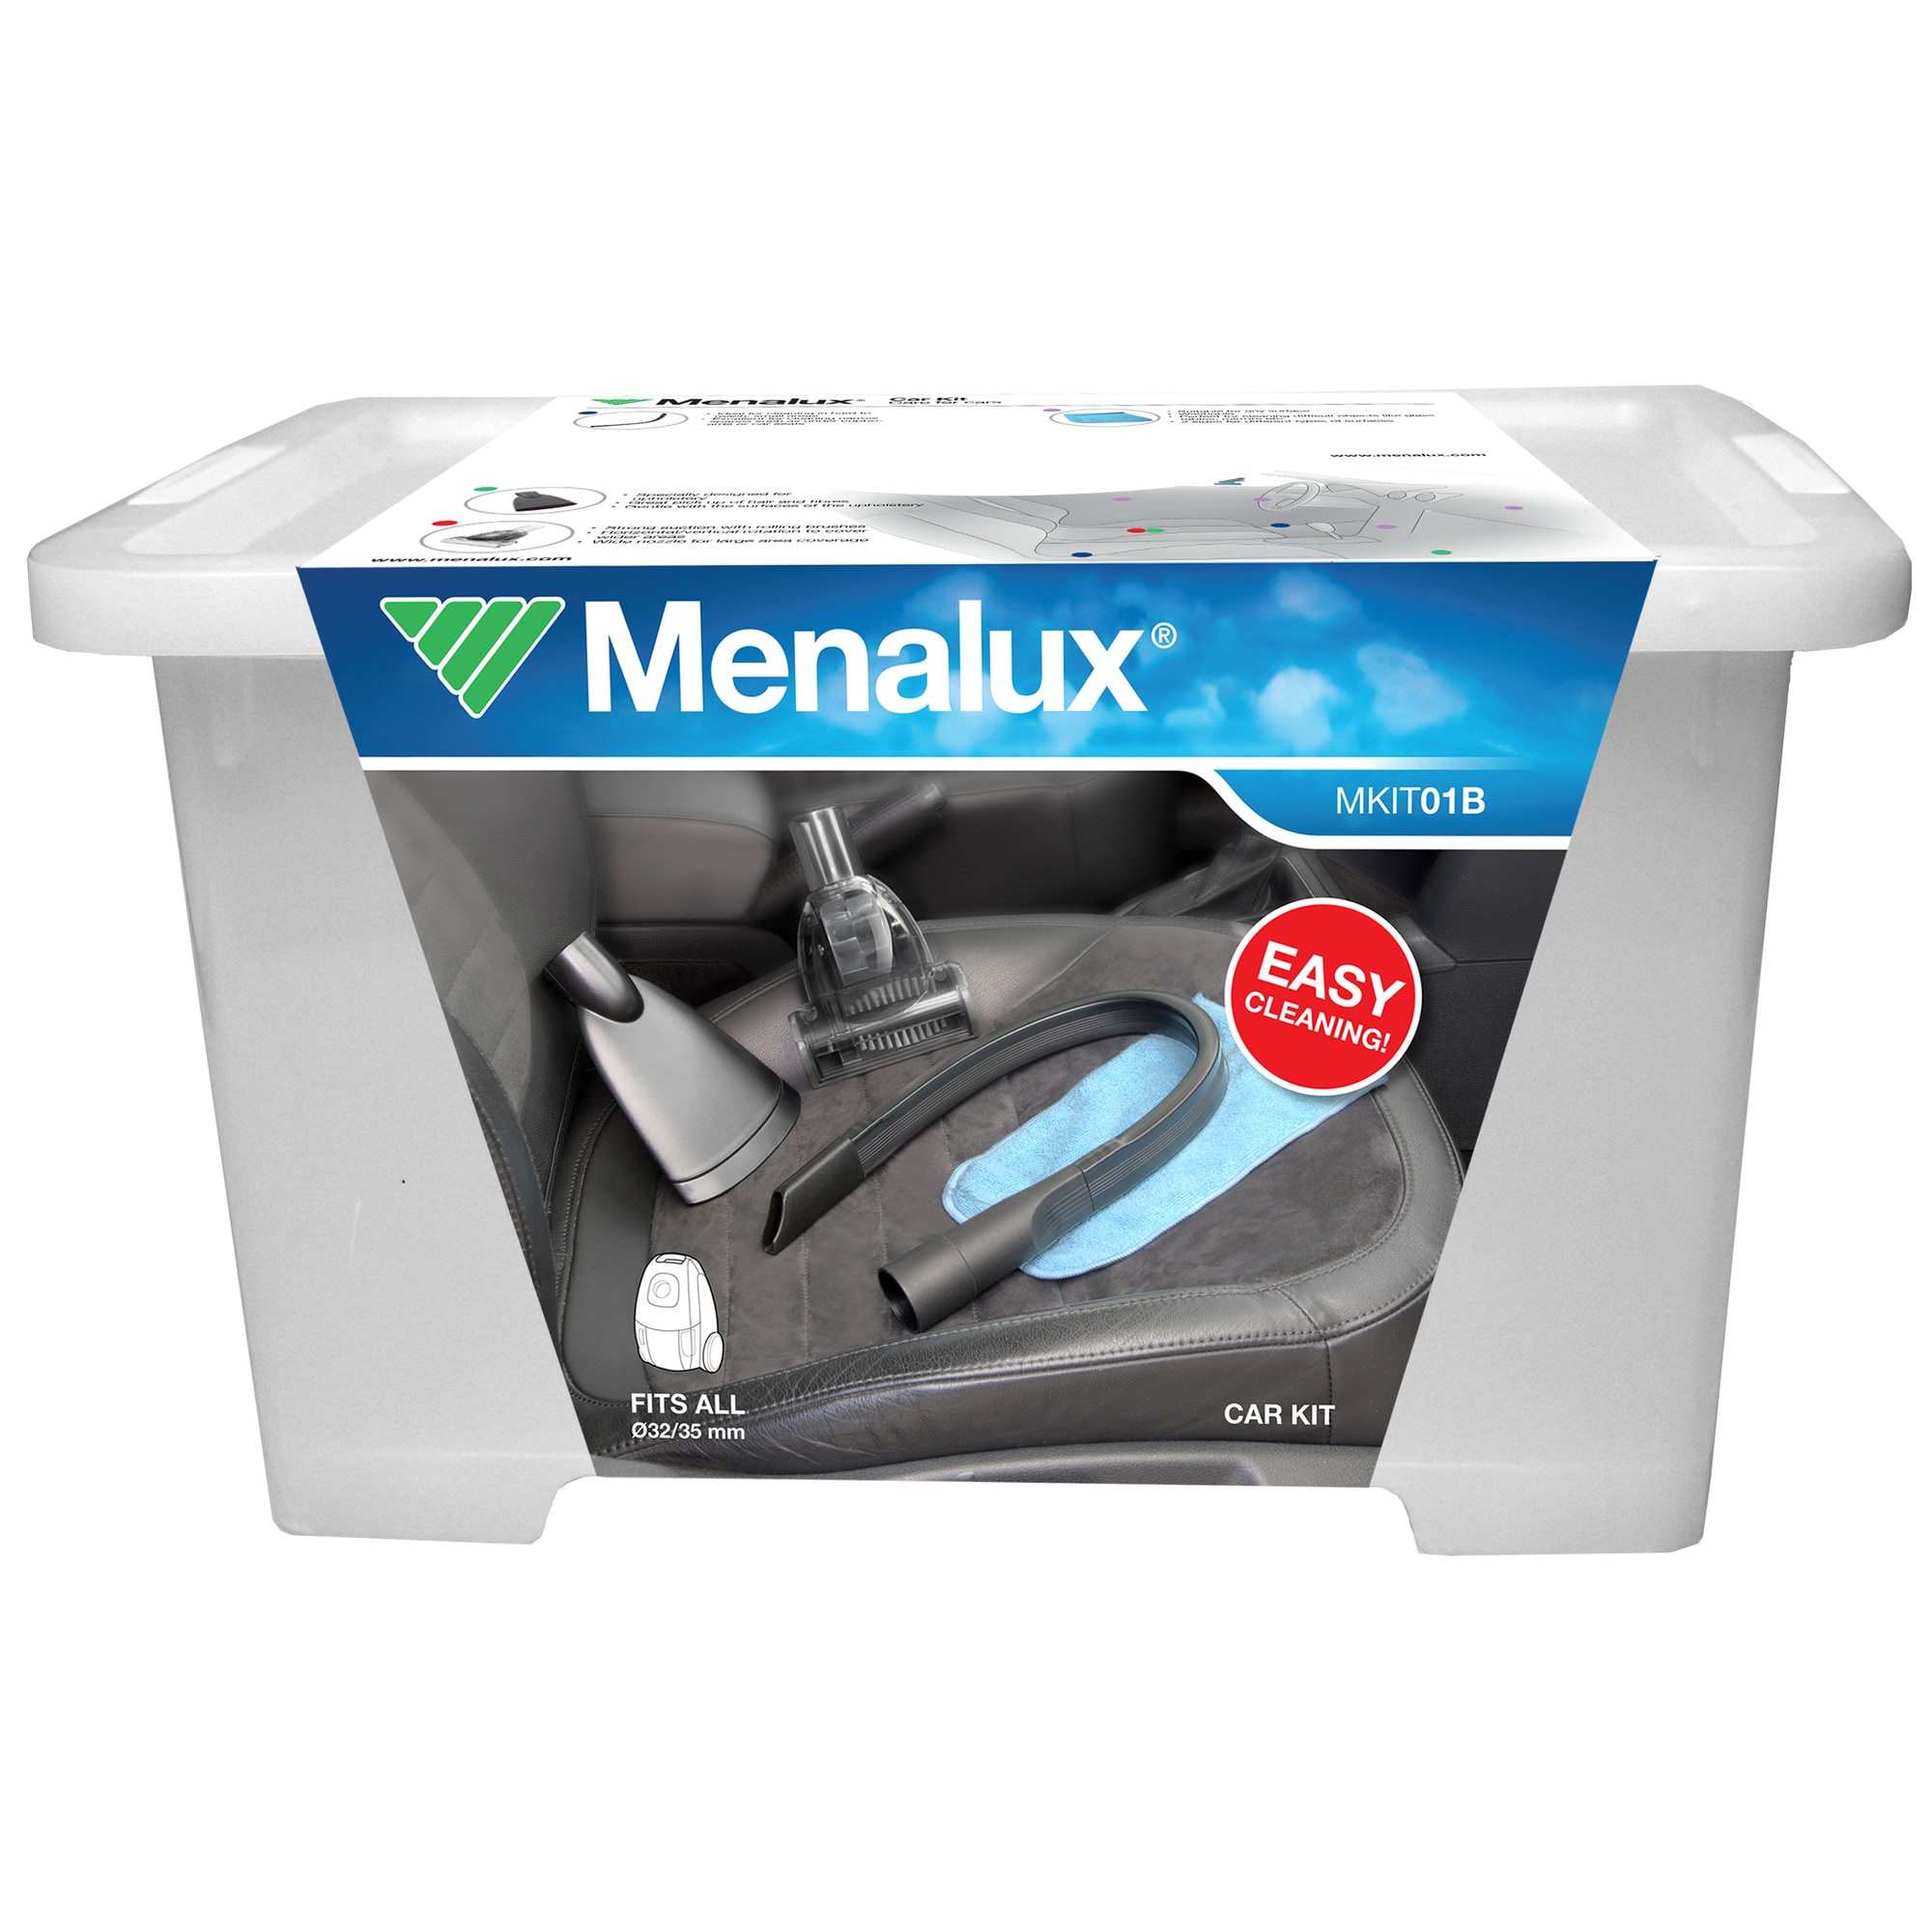 Menalux Auto Care støvsugersæt til bil MKIT01B | Elgiganten